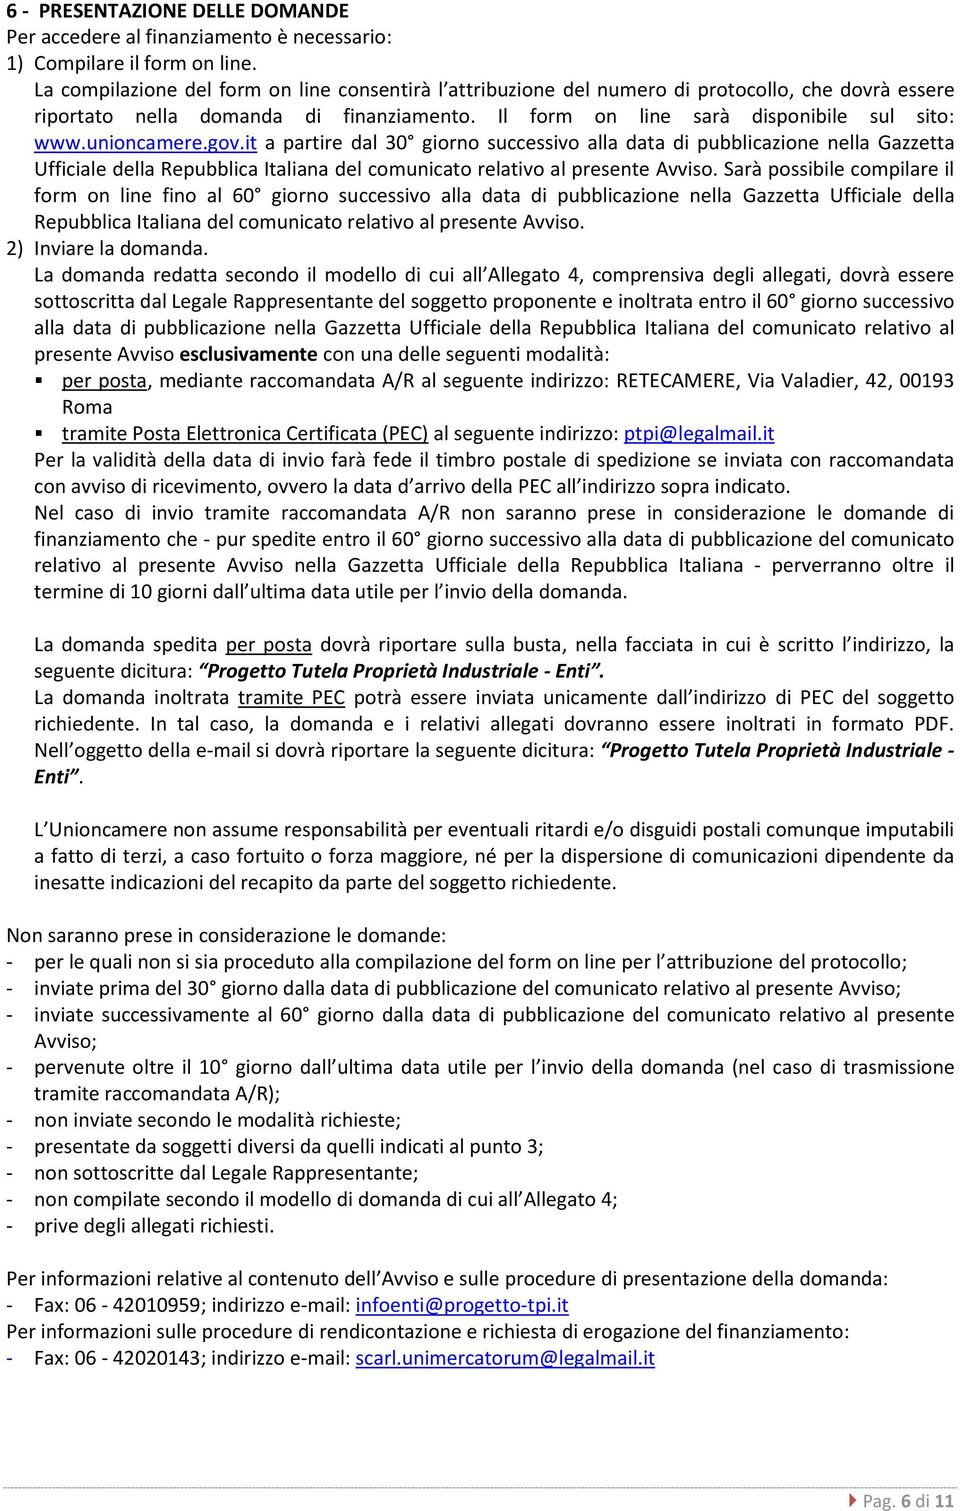 unioncamere.gov.it a partire dal 30 giorno successivo alla data di pubblicazione nella Gazzetta Ufficiale della Repubblica Italiana del comunicato relativo al presente Avviso.